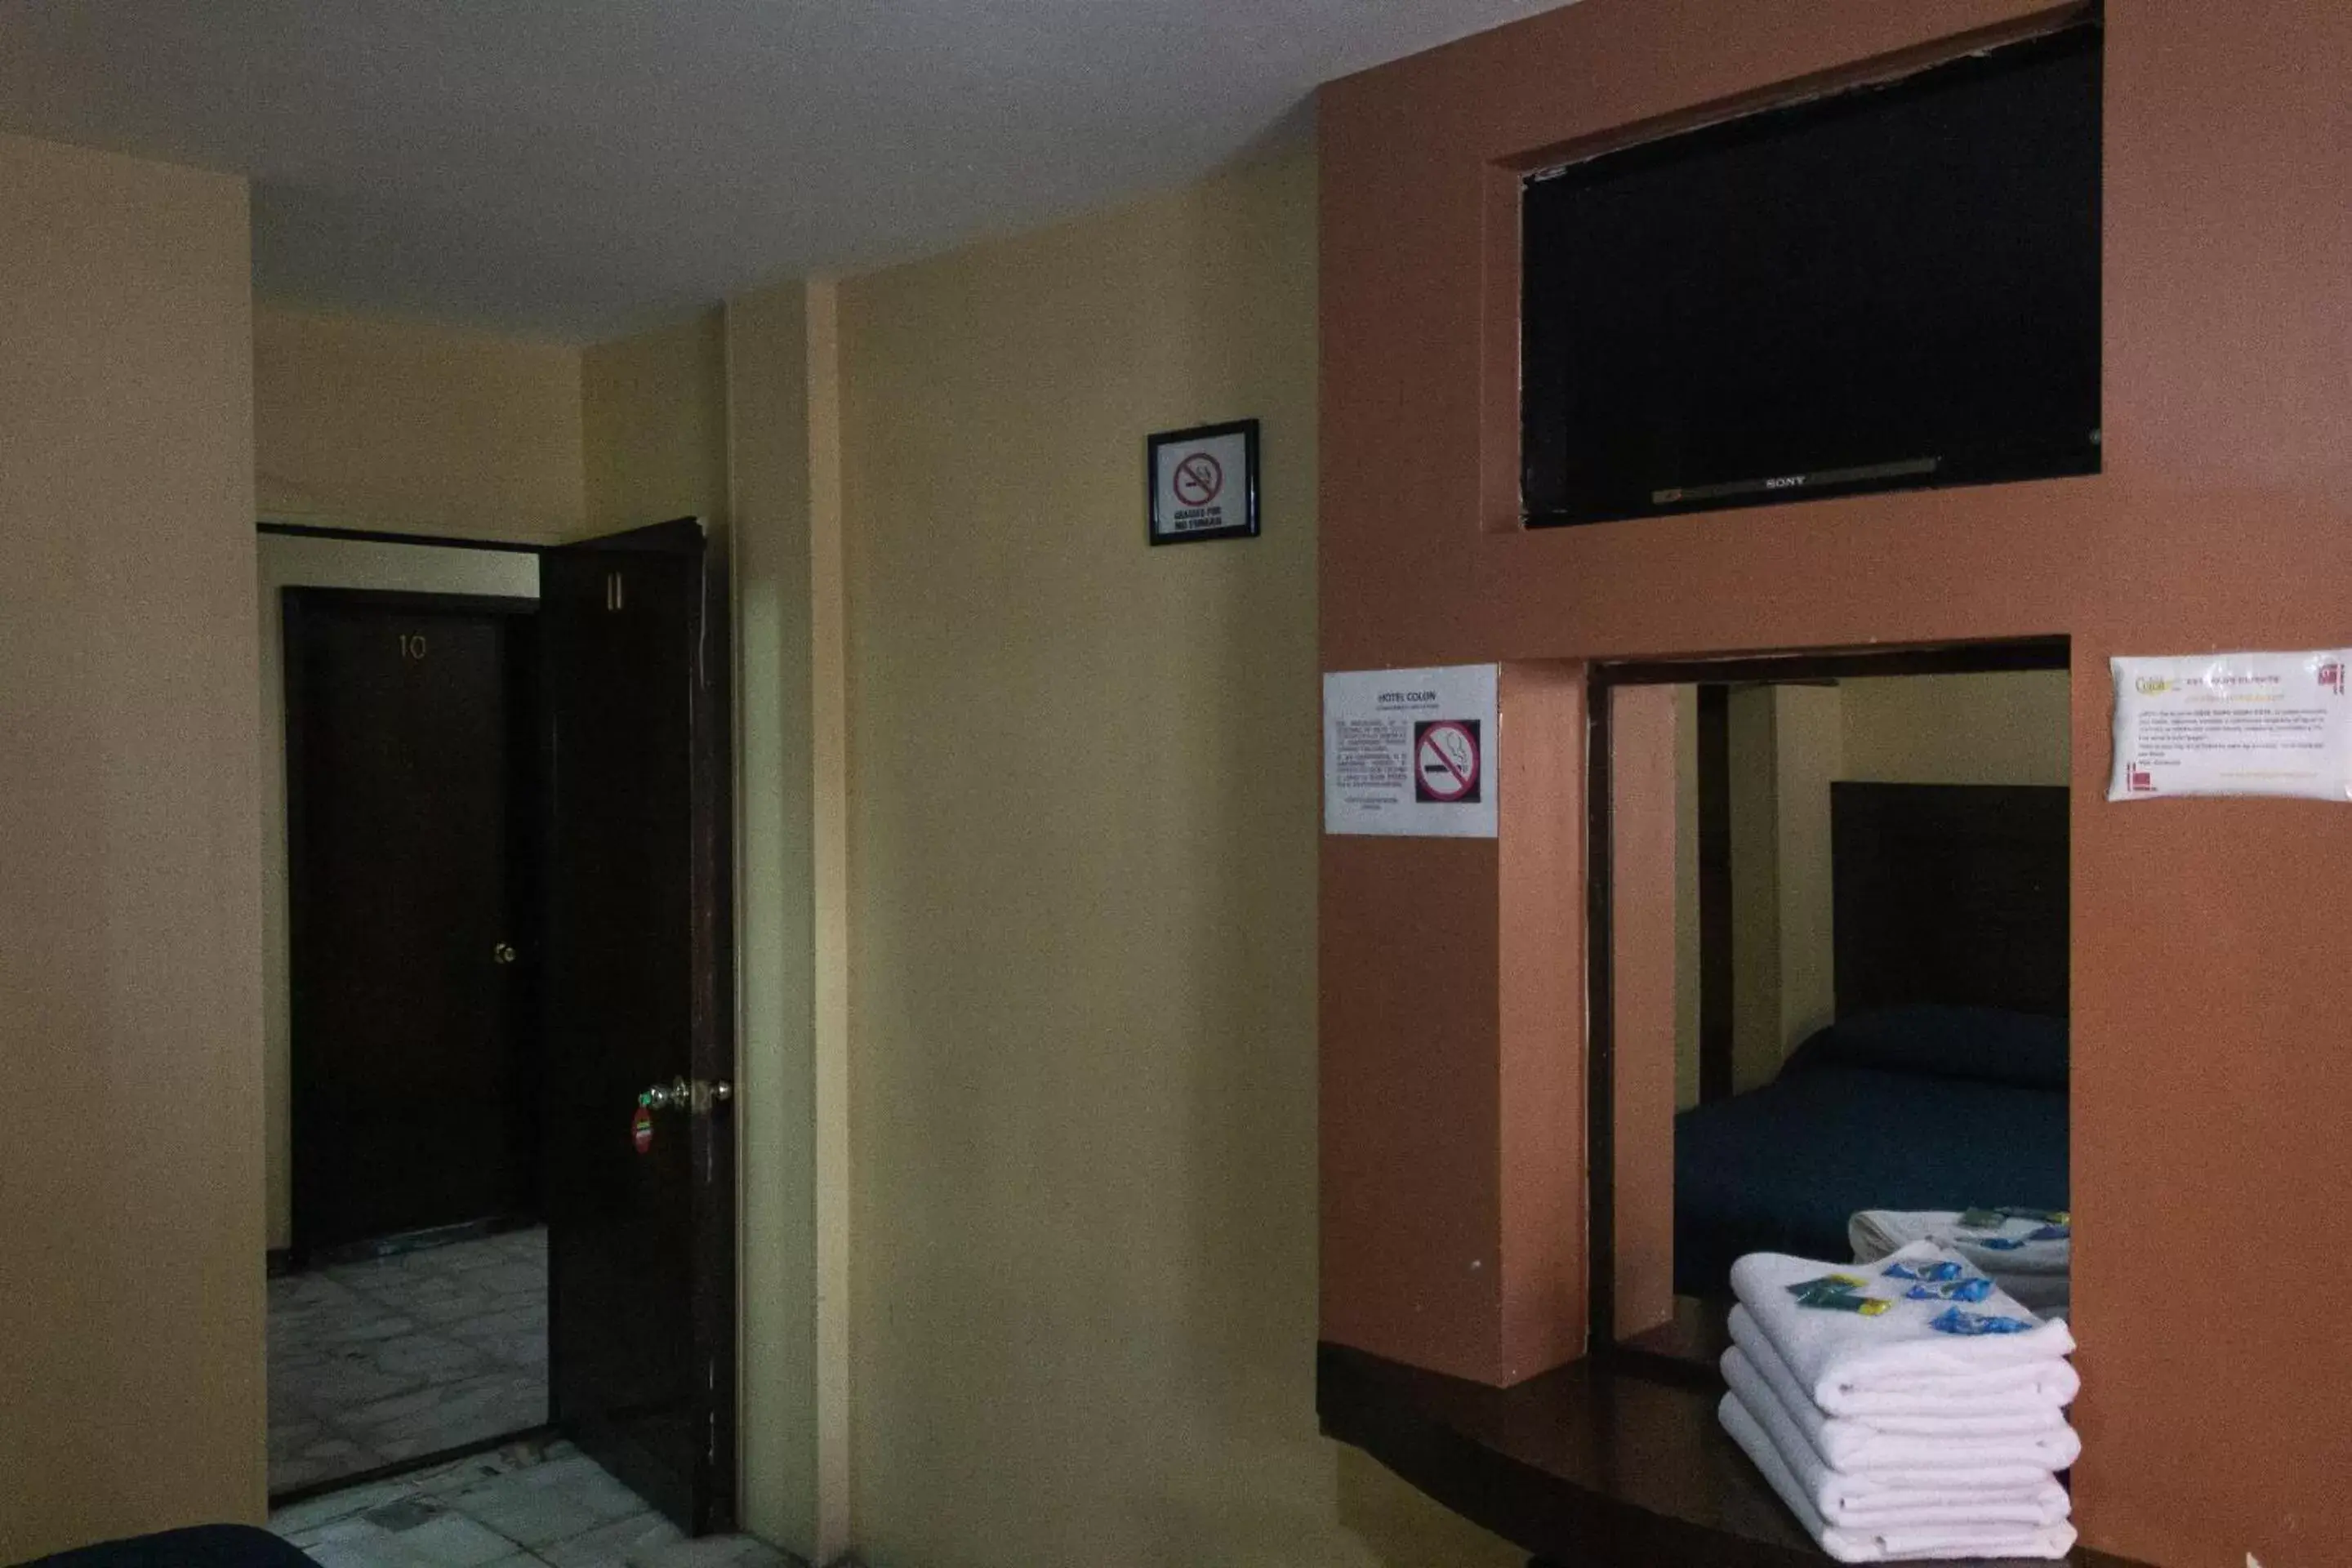 Bedroom, TV/Entertainment Center in OYO Hotel Colón, Plaza Bicentenario, Zacatecas Centro